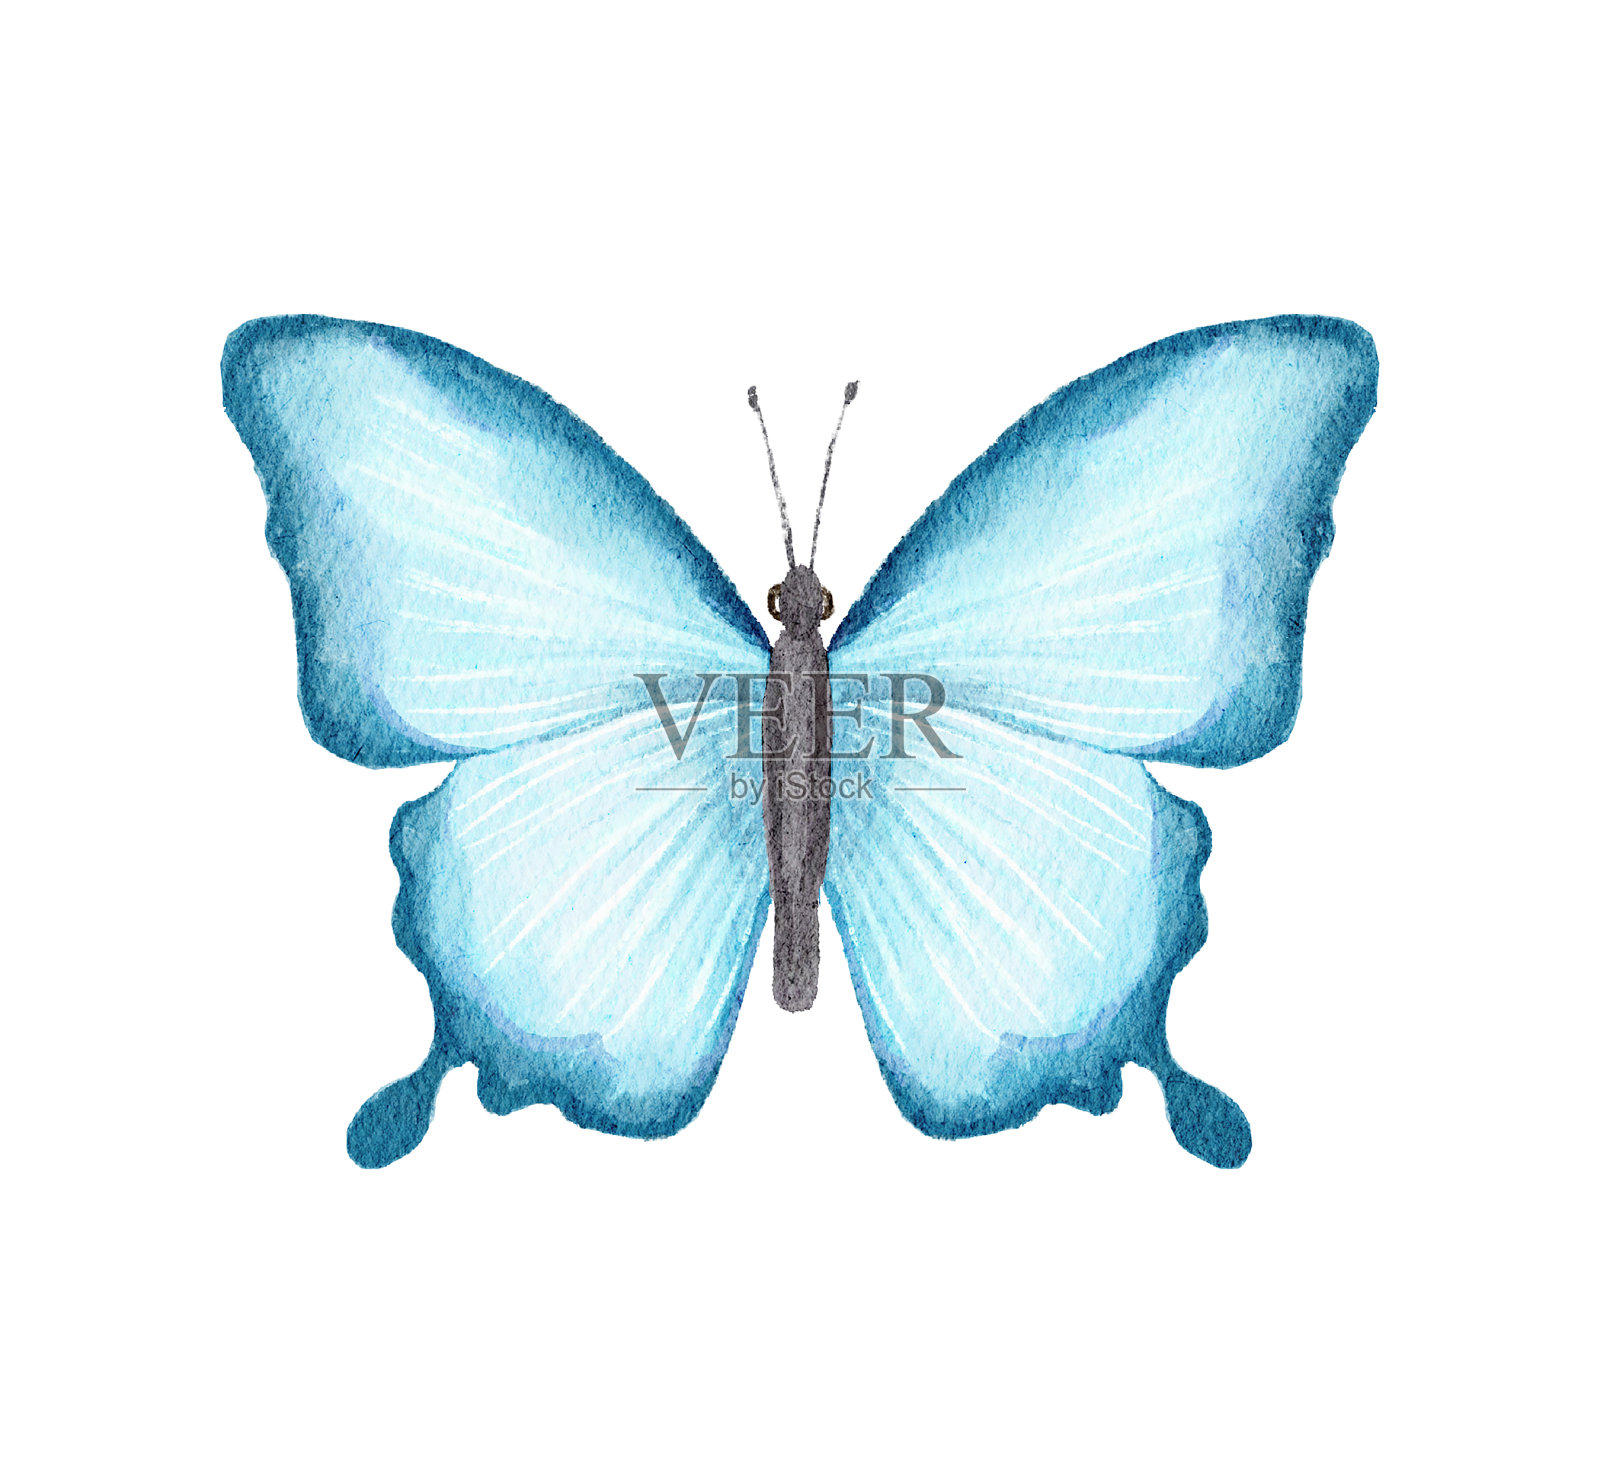 水彩插图与蓝色蝴蝶设计元素图片